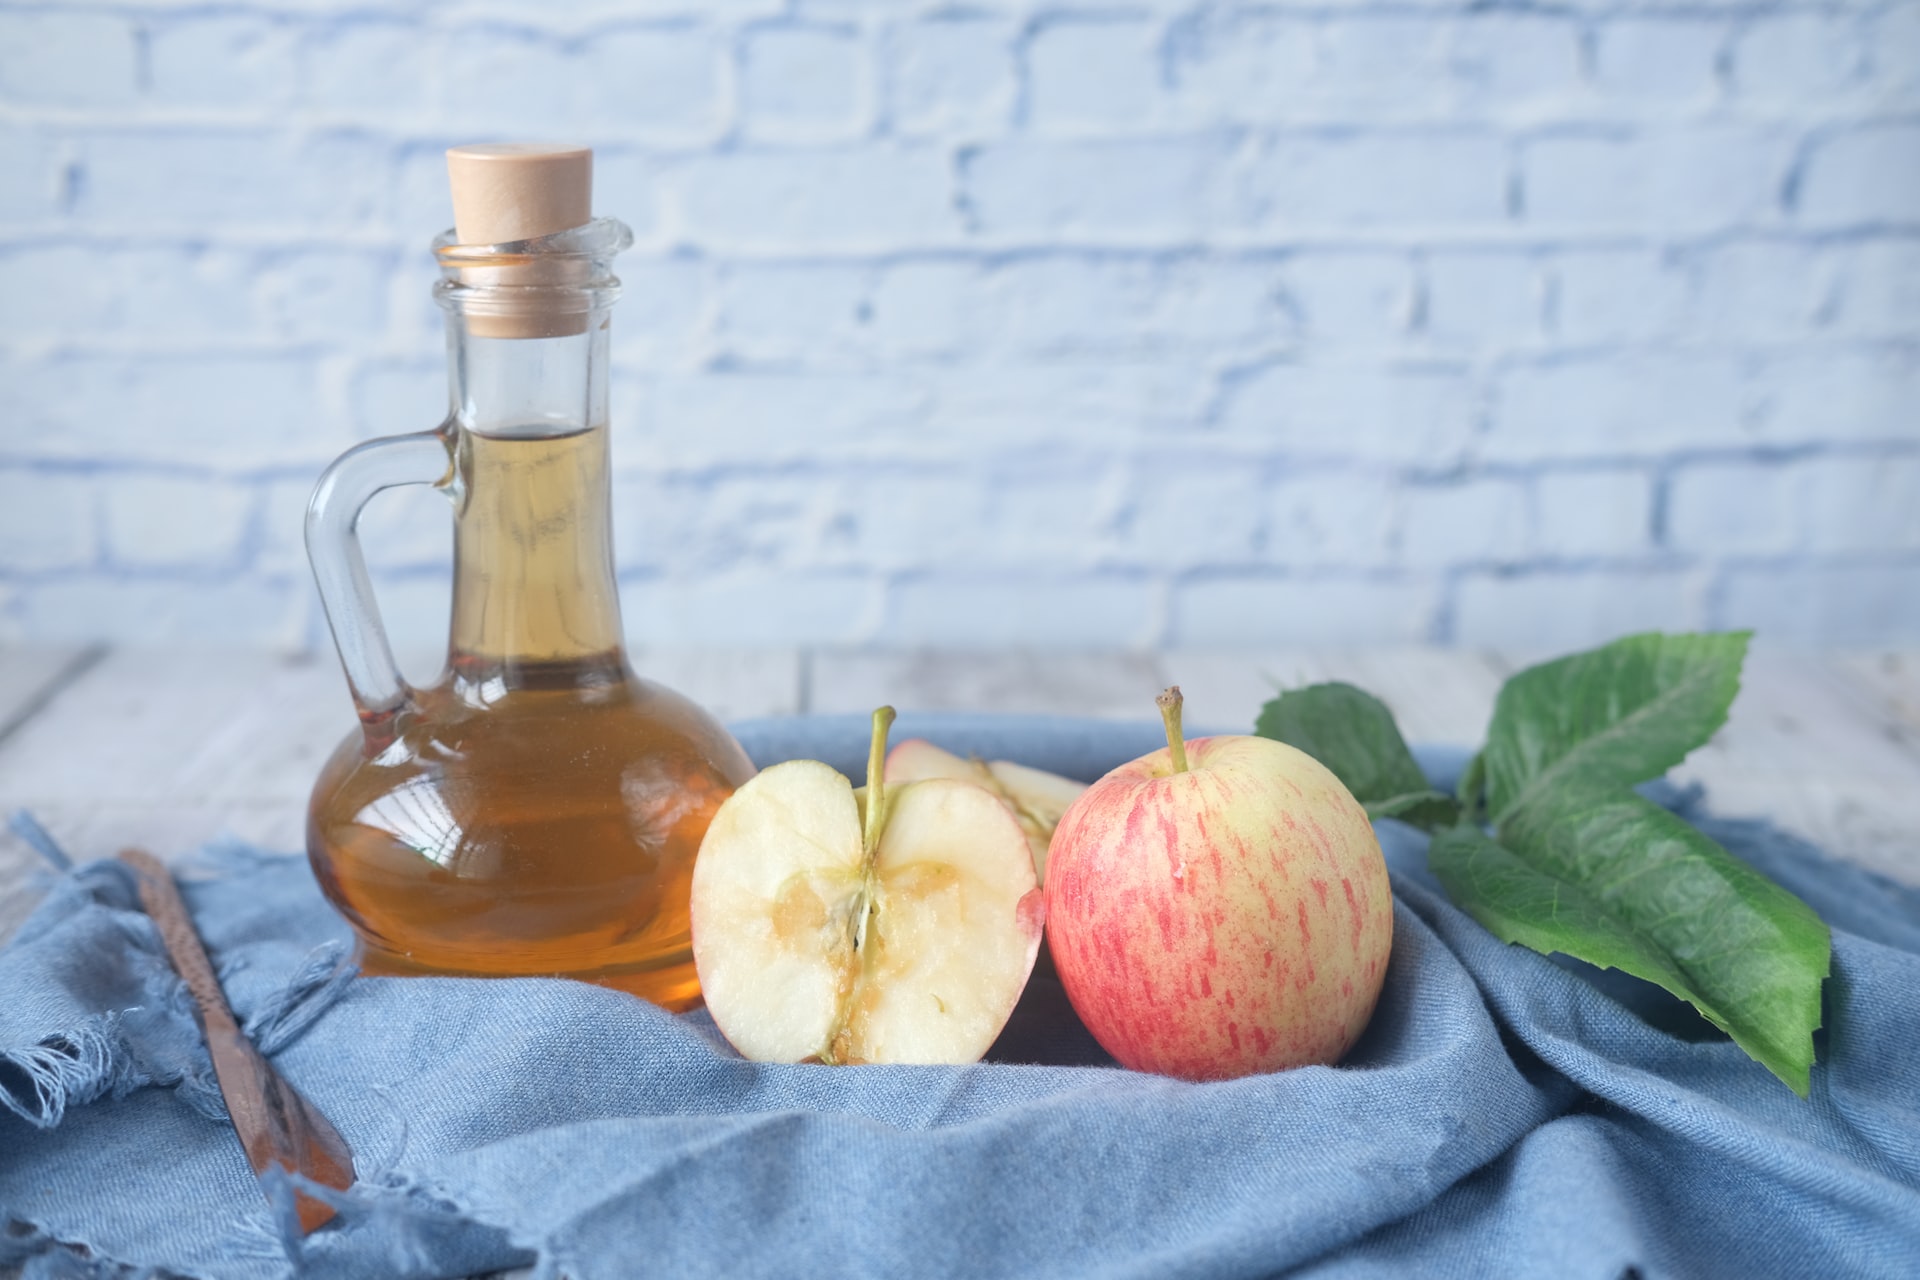 Does Apple Cider Vinegar Ever Go Bad